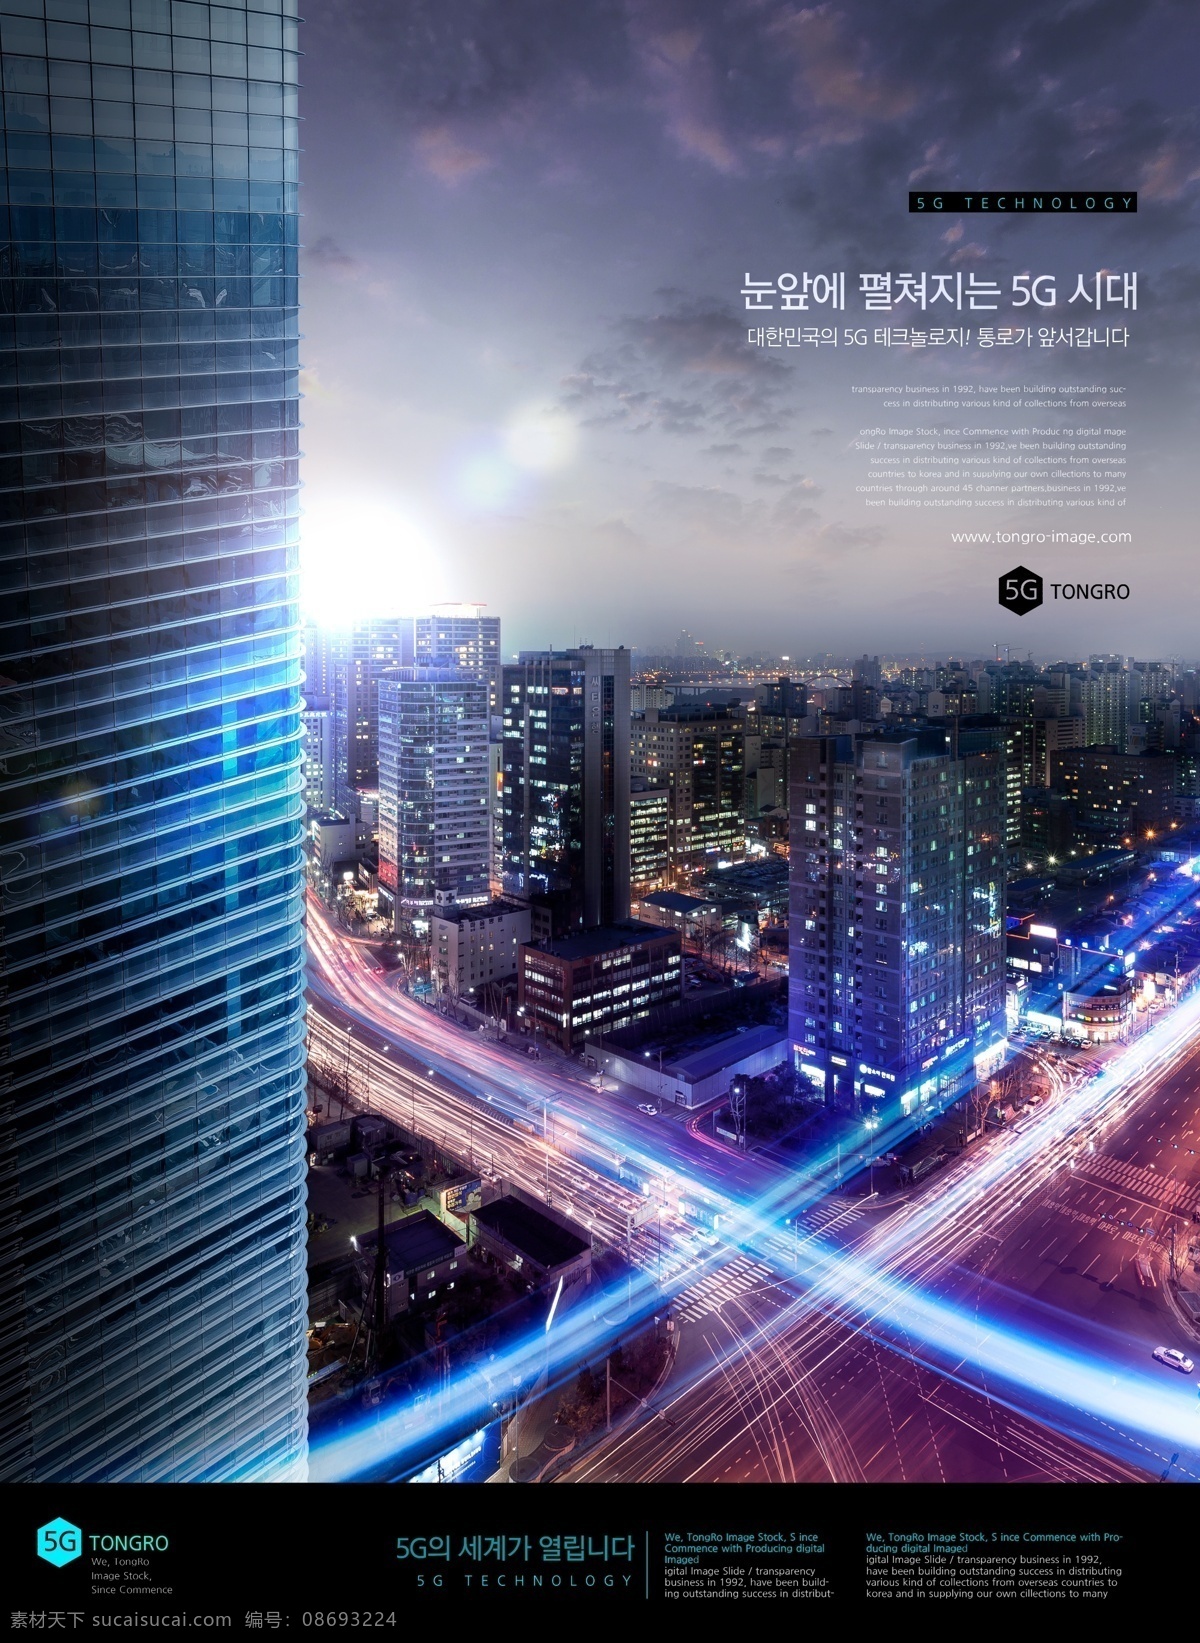 智能 5g 科技 海报 未来 创新 灯泡 创意 创想 想象 智慧 蓝色 天空 立体 通讯 互联网 宣传 模版 展板 招贴画 宣传画 大楼 大厦 招贴设计